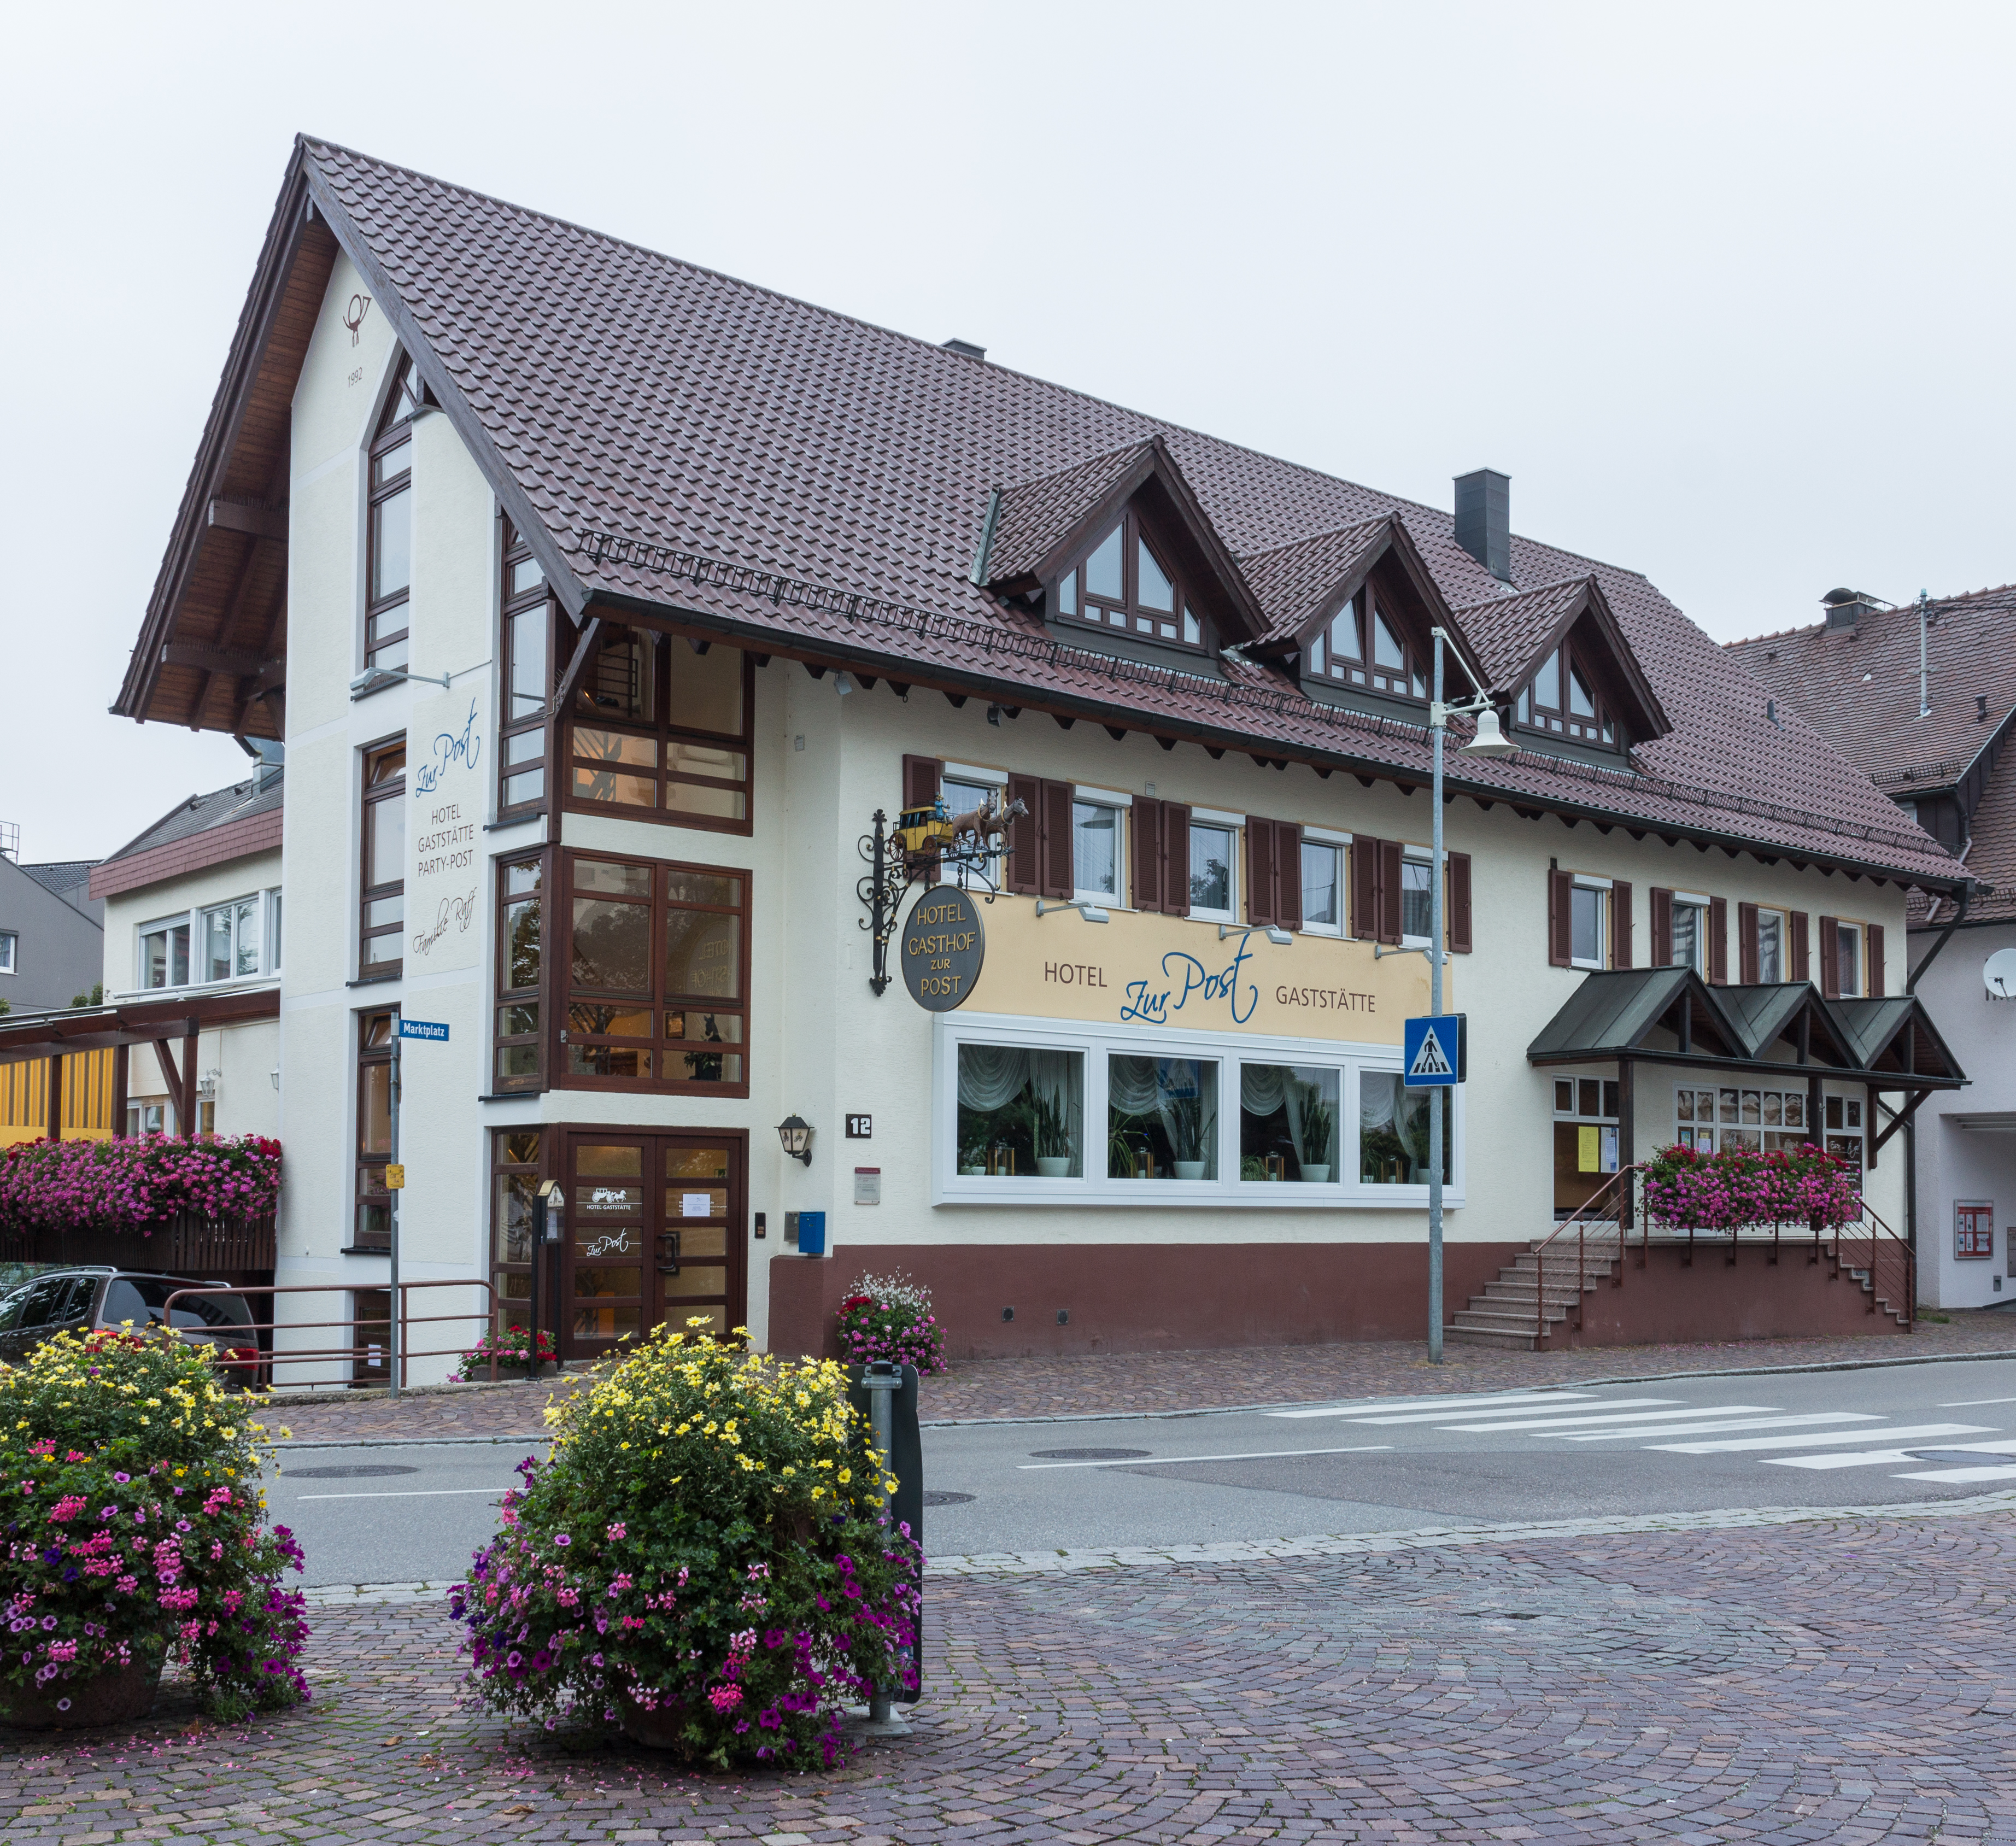 Weilheim an der Teck. Hotel Gaststätte zur Post, Marktpl. 12, 73235 (Nationales Denkmal) 01